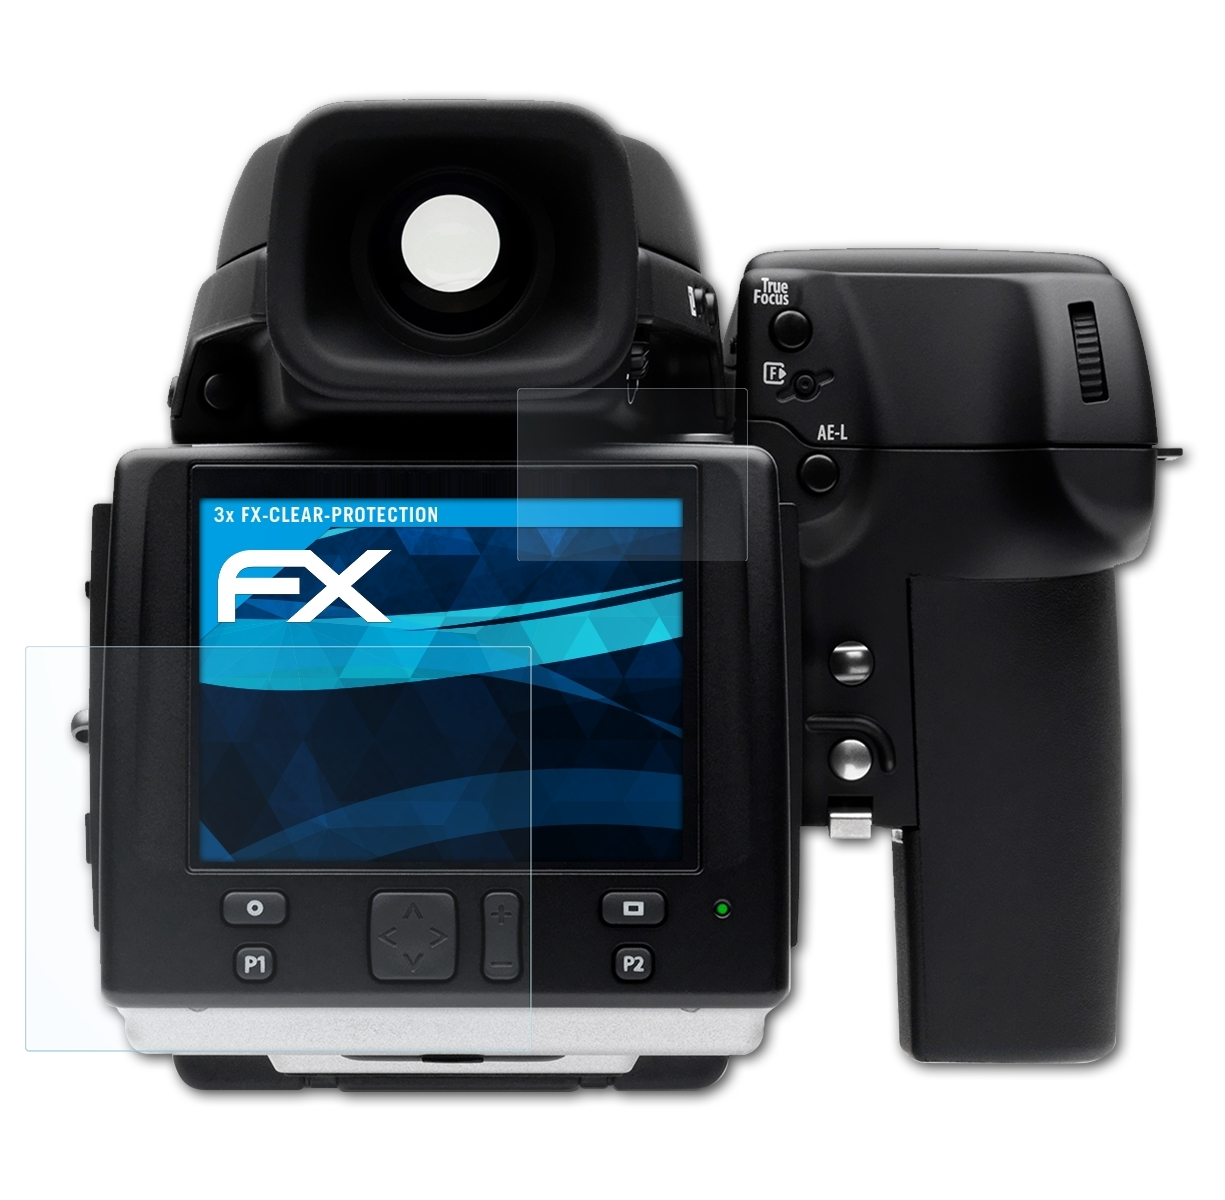 3x H5D) Displayschutz(für FX-Clear ATFOLIX Hasselblad